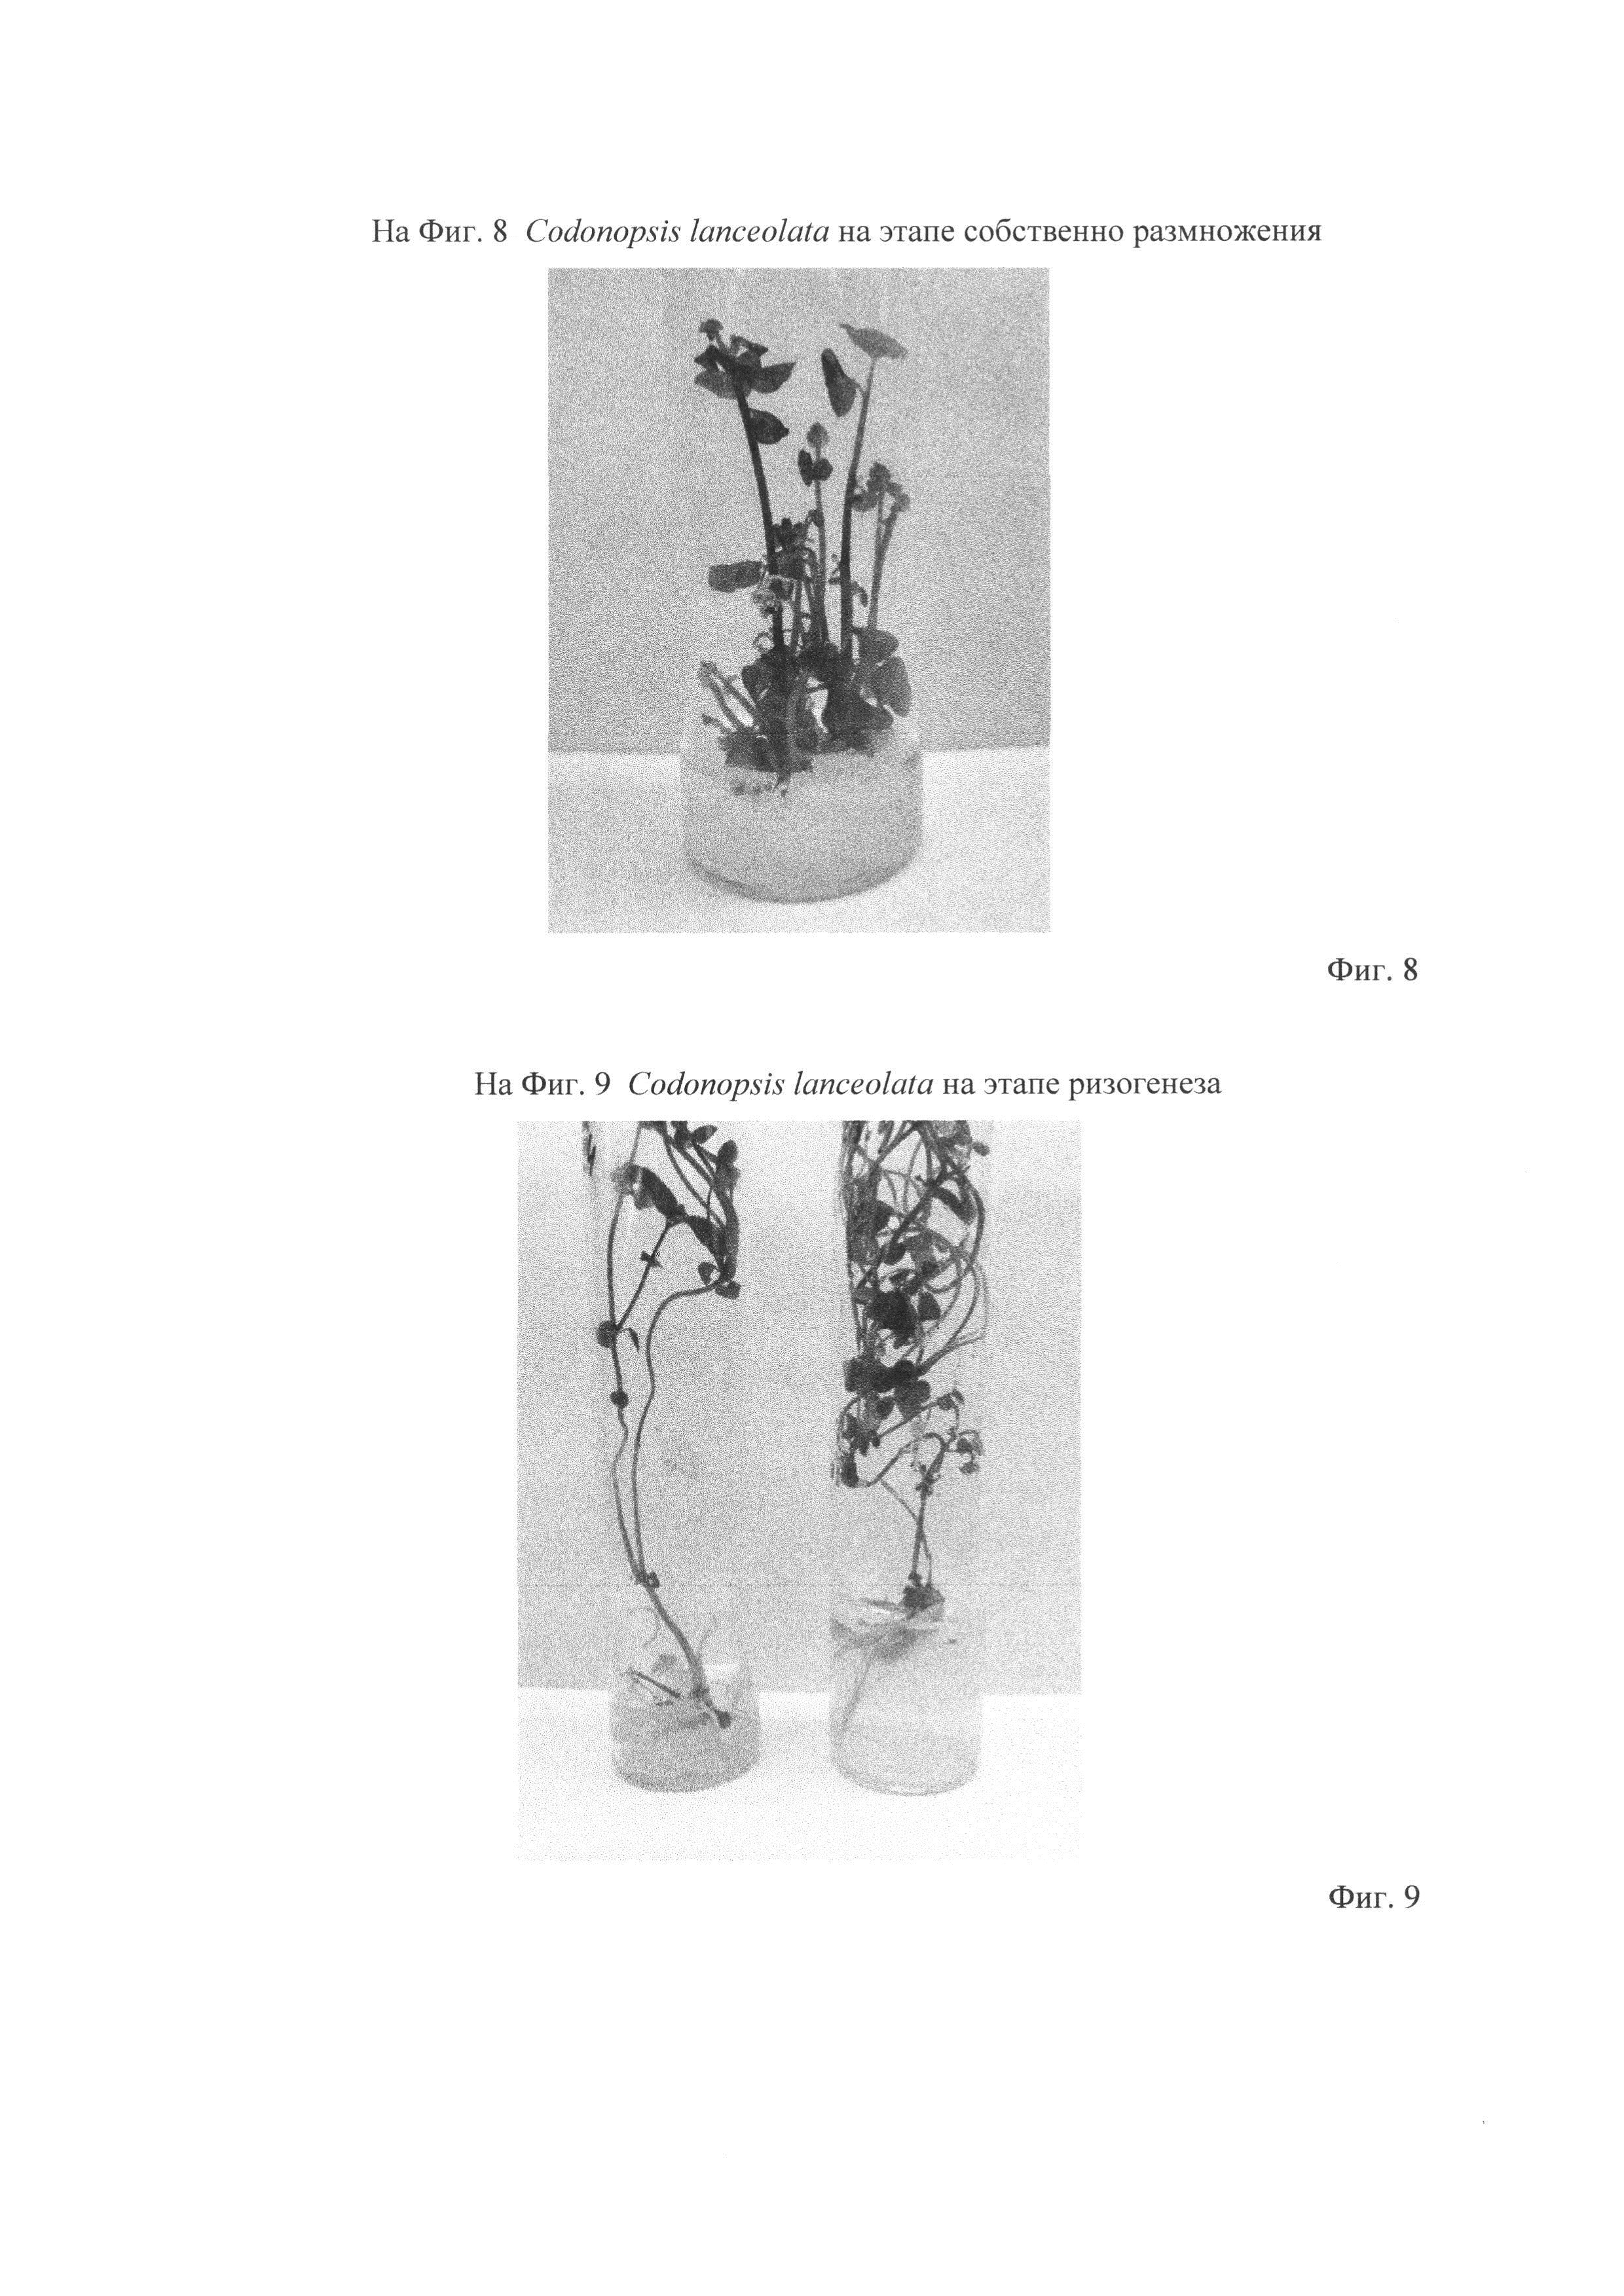 Способ клонального микроразмножения кодонопсиса ланцетного (Codonopsis lanceolata (Siebold.&Zucc.) Benth. & Hook. Fil.)